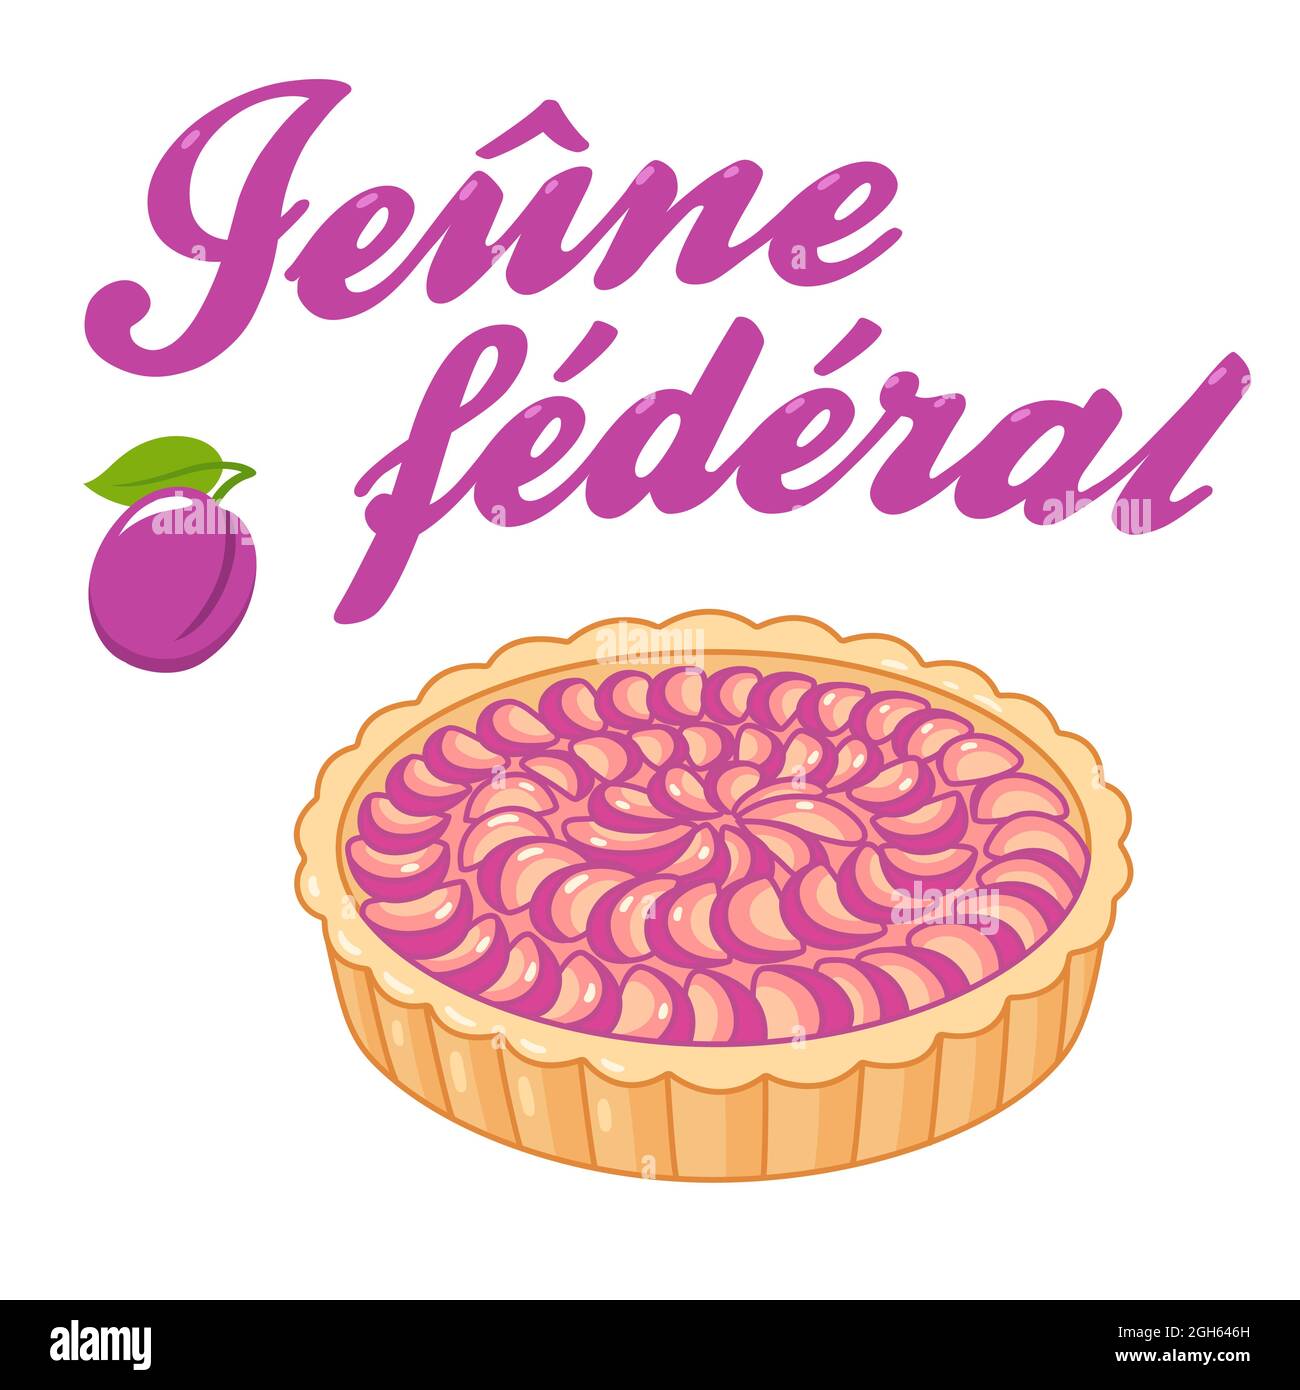 Jeûne fédéral (giorno federale del Ringraziamento, pentimento e preghiera) festa pubblica in Svizzera con crostata di prugne (tarte aux pruneaux). Illustrazione vettoriale Illustrazione Vettoriale